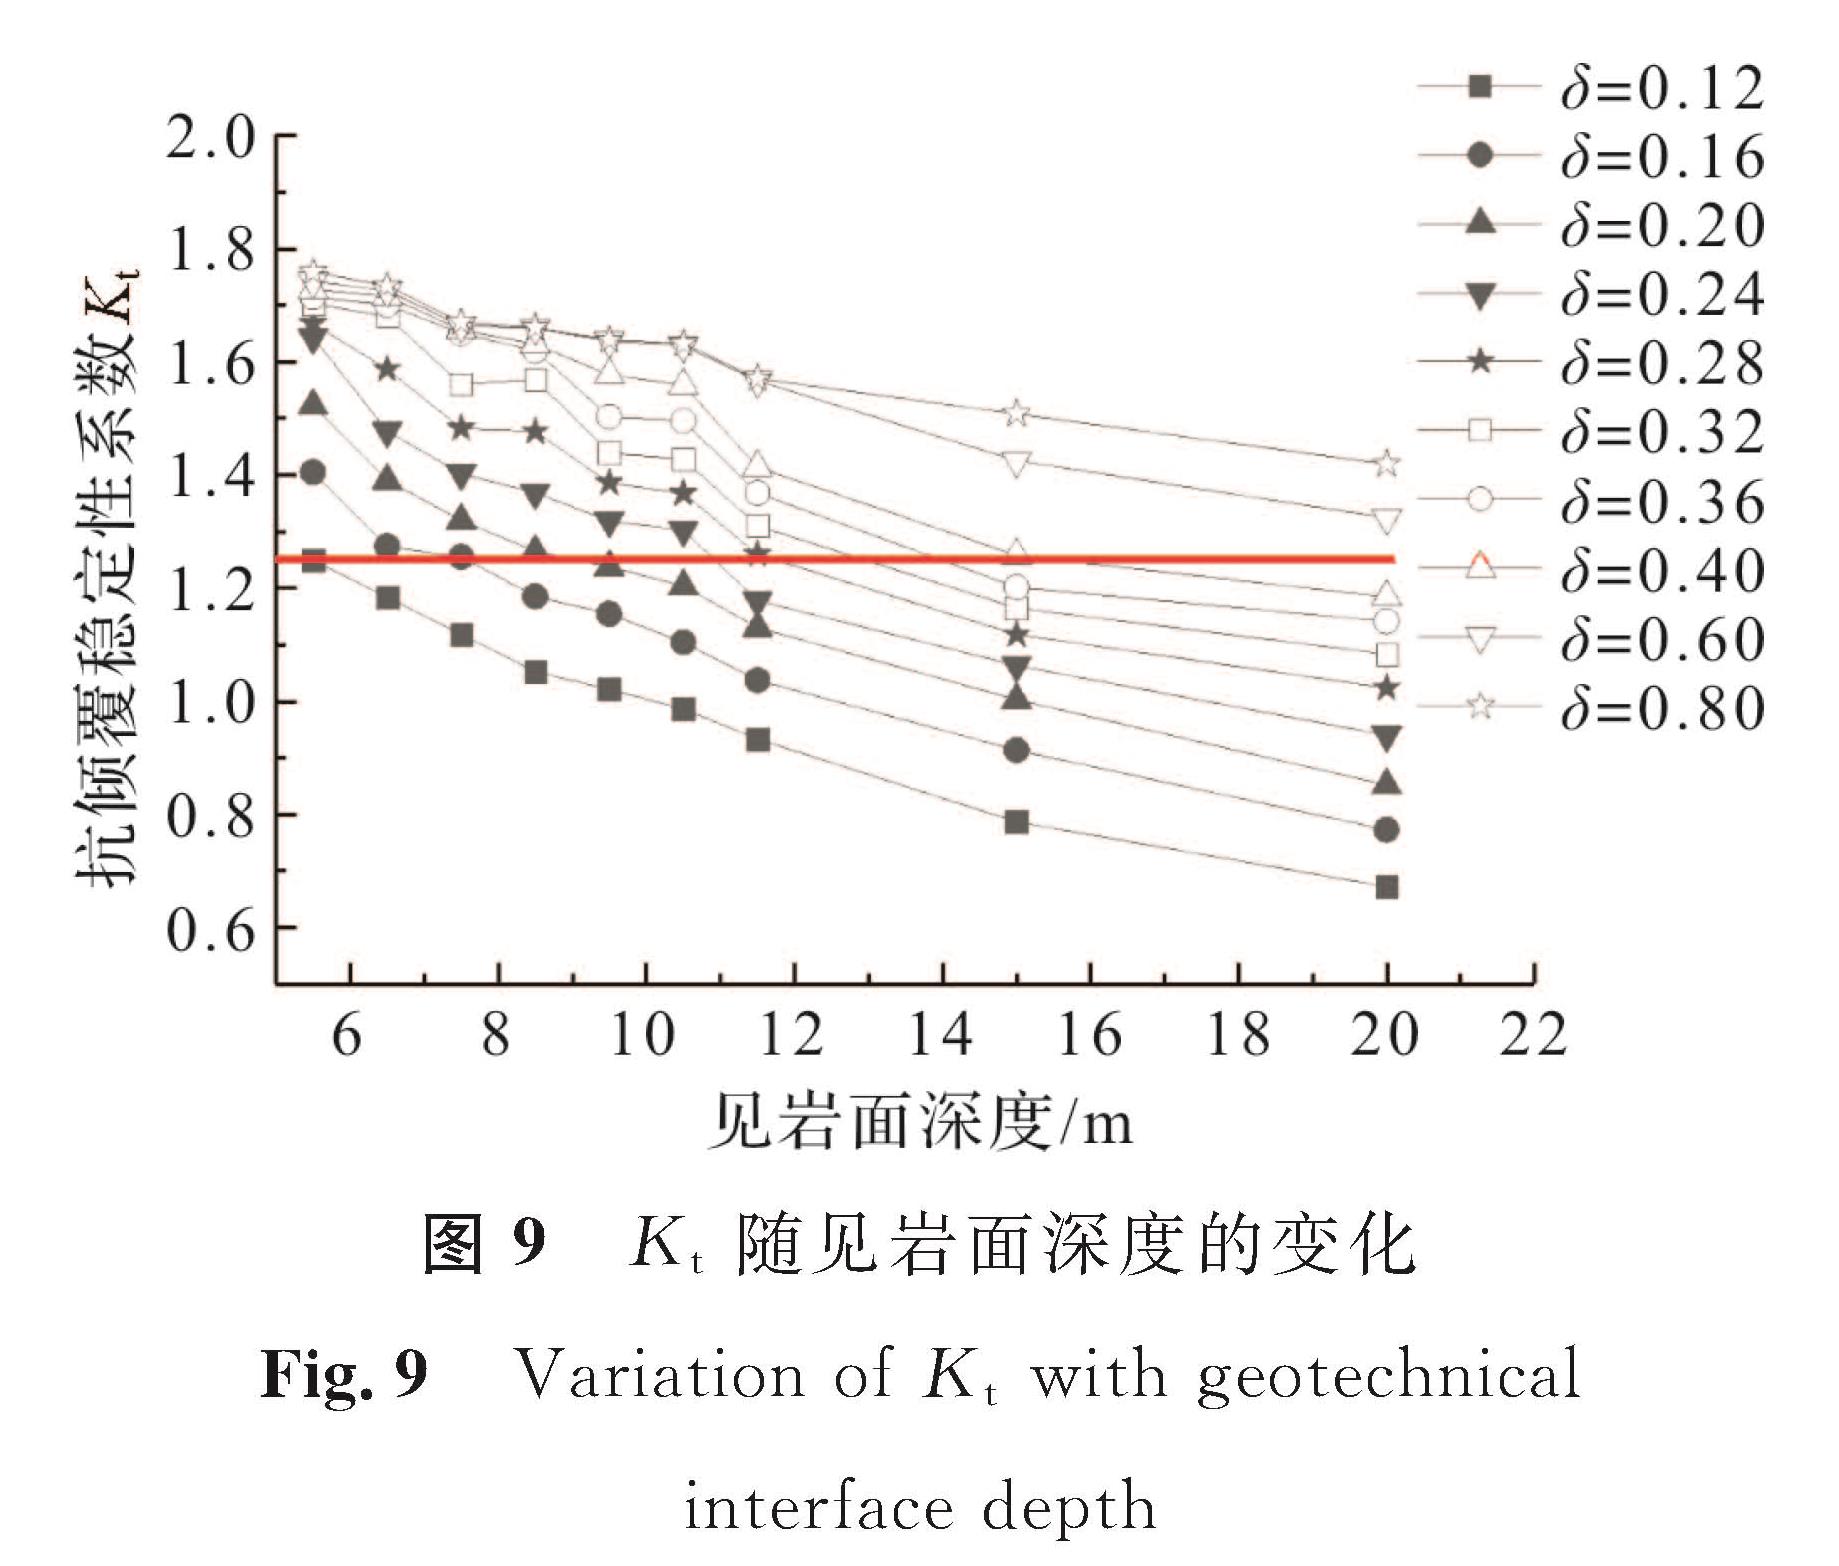 图9 Kt随见岩面深度的变化<br/>Fig.9 Variation of Kt with geotechnical interface depth